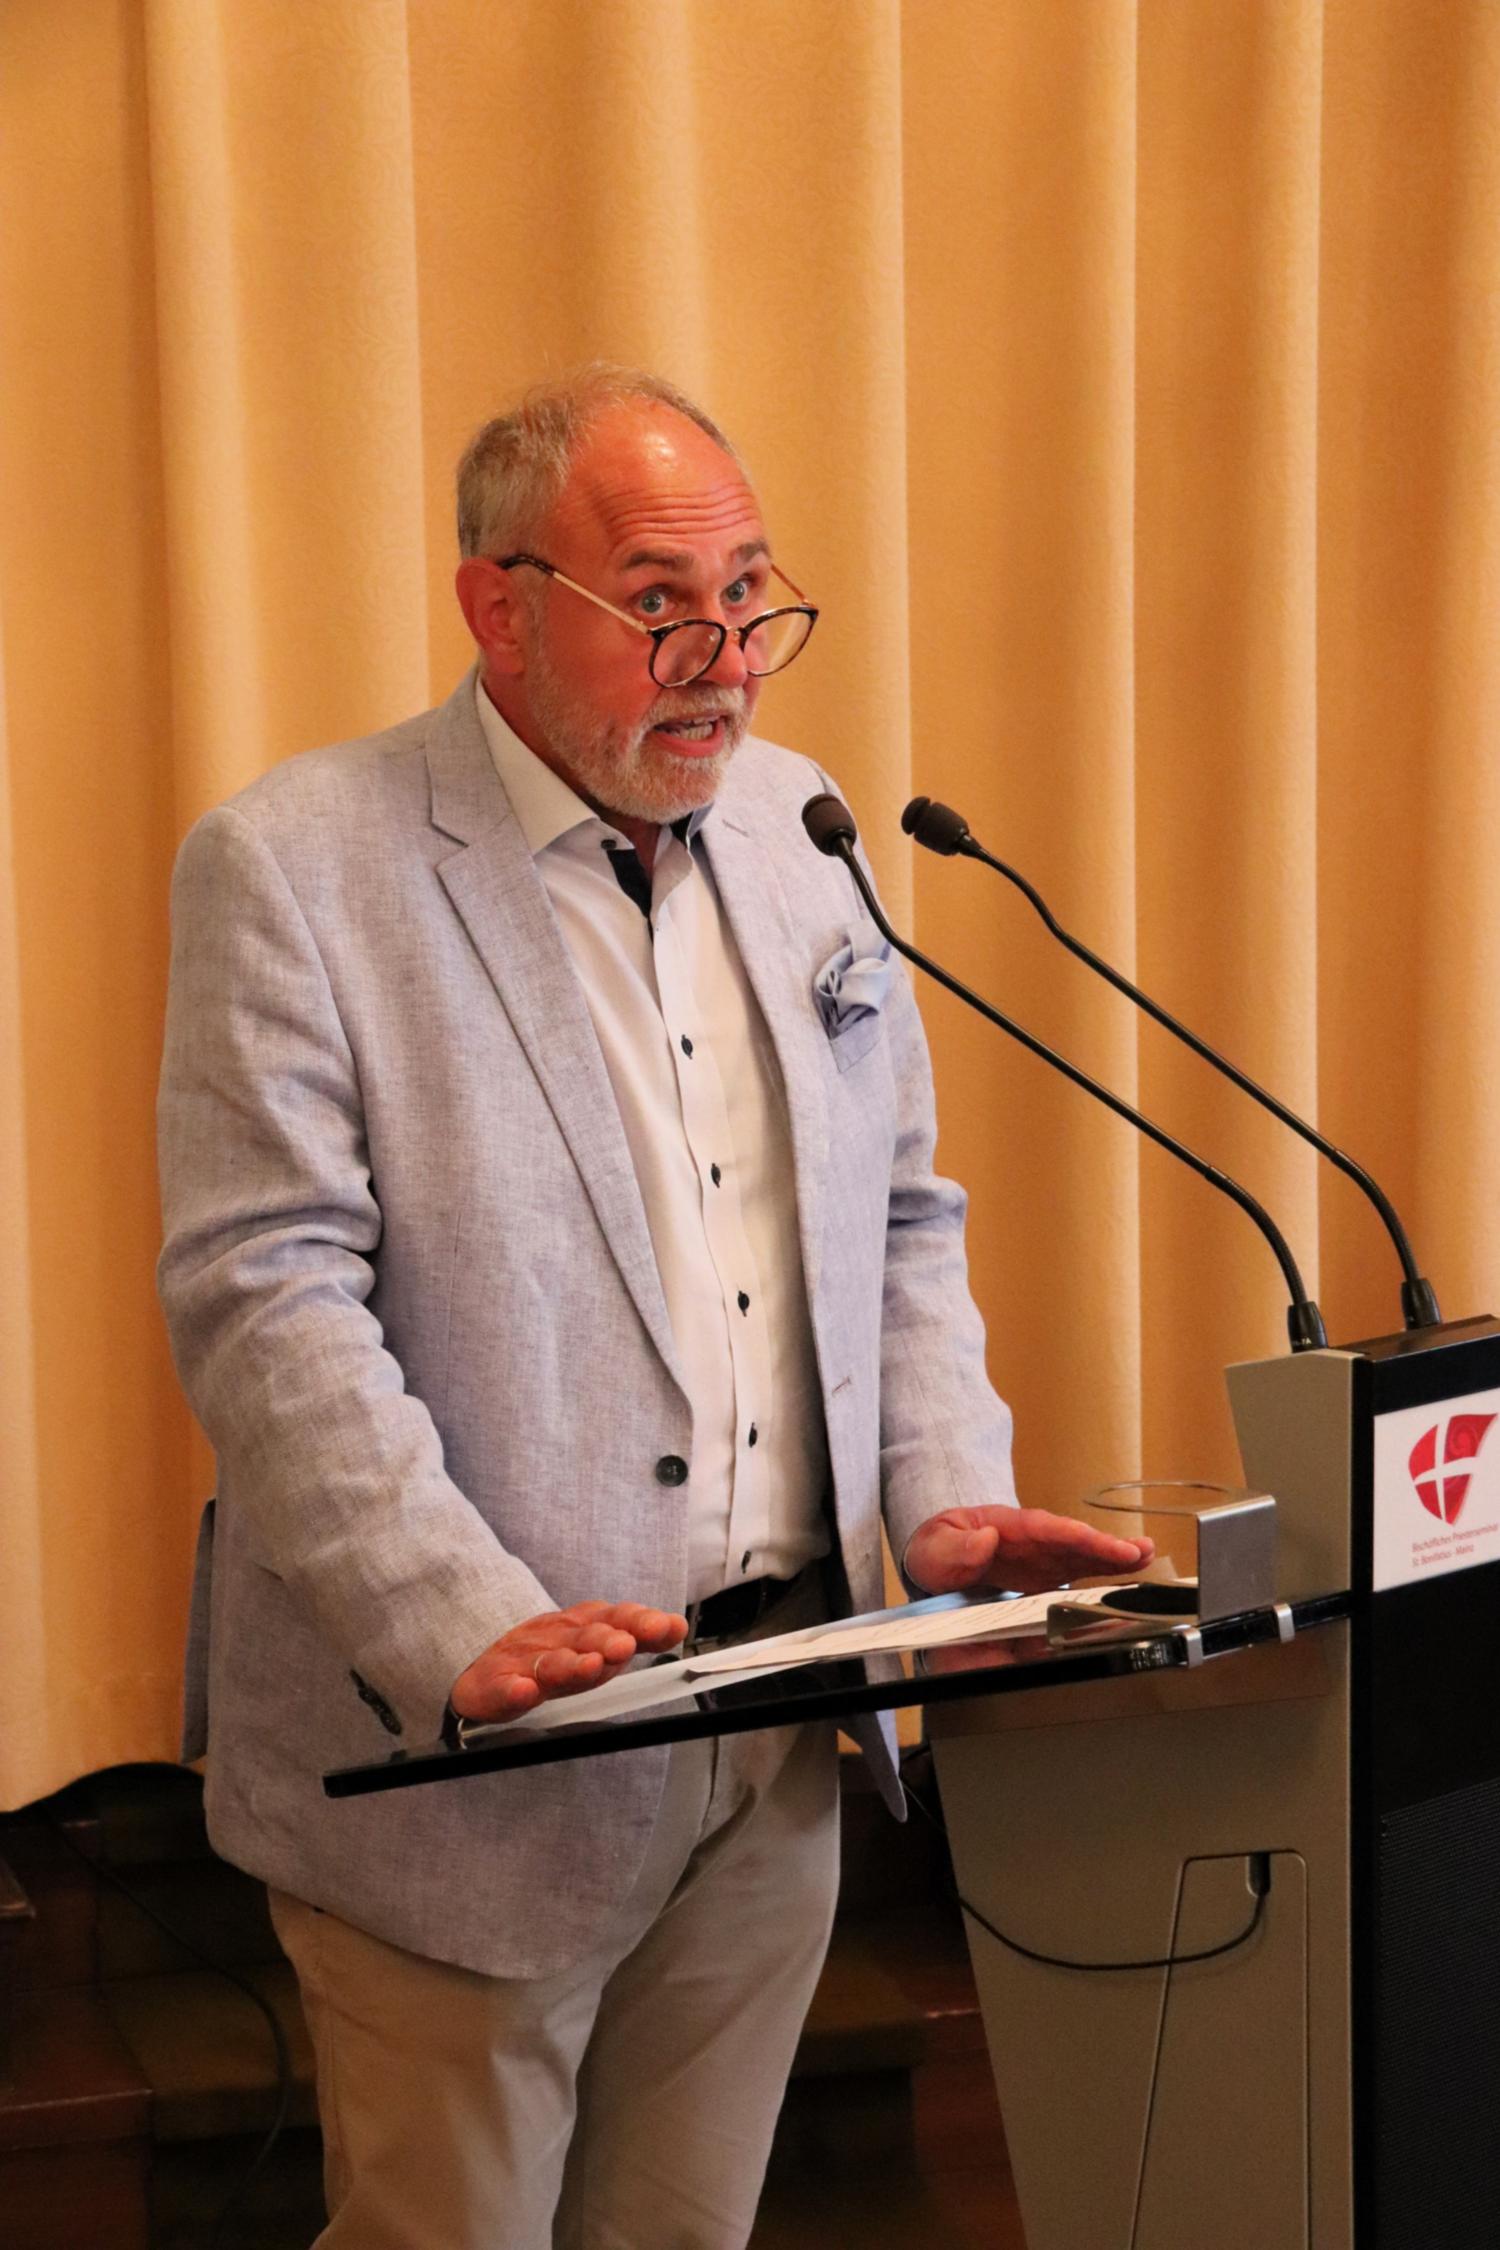 Kanzleidirektor Frank Flegel richtete Dankes-Worte an die Zuhörenden (c) Bistum Mainz/Hoffmann